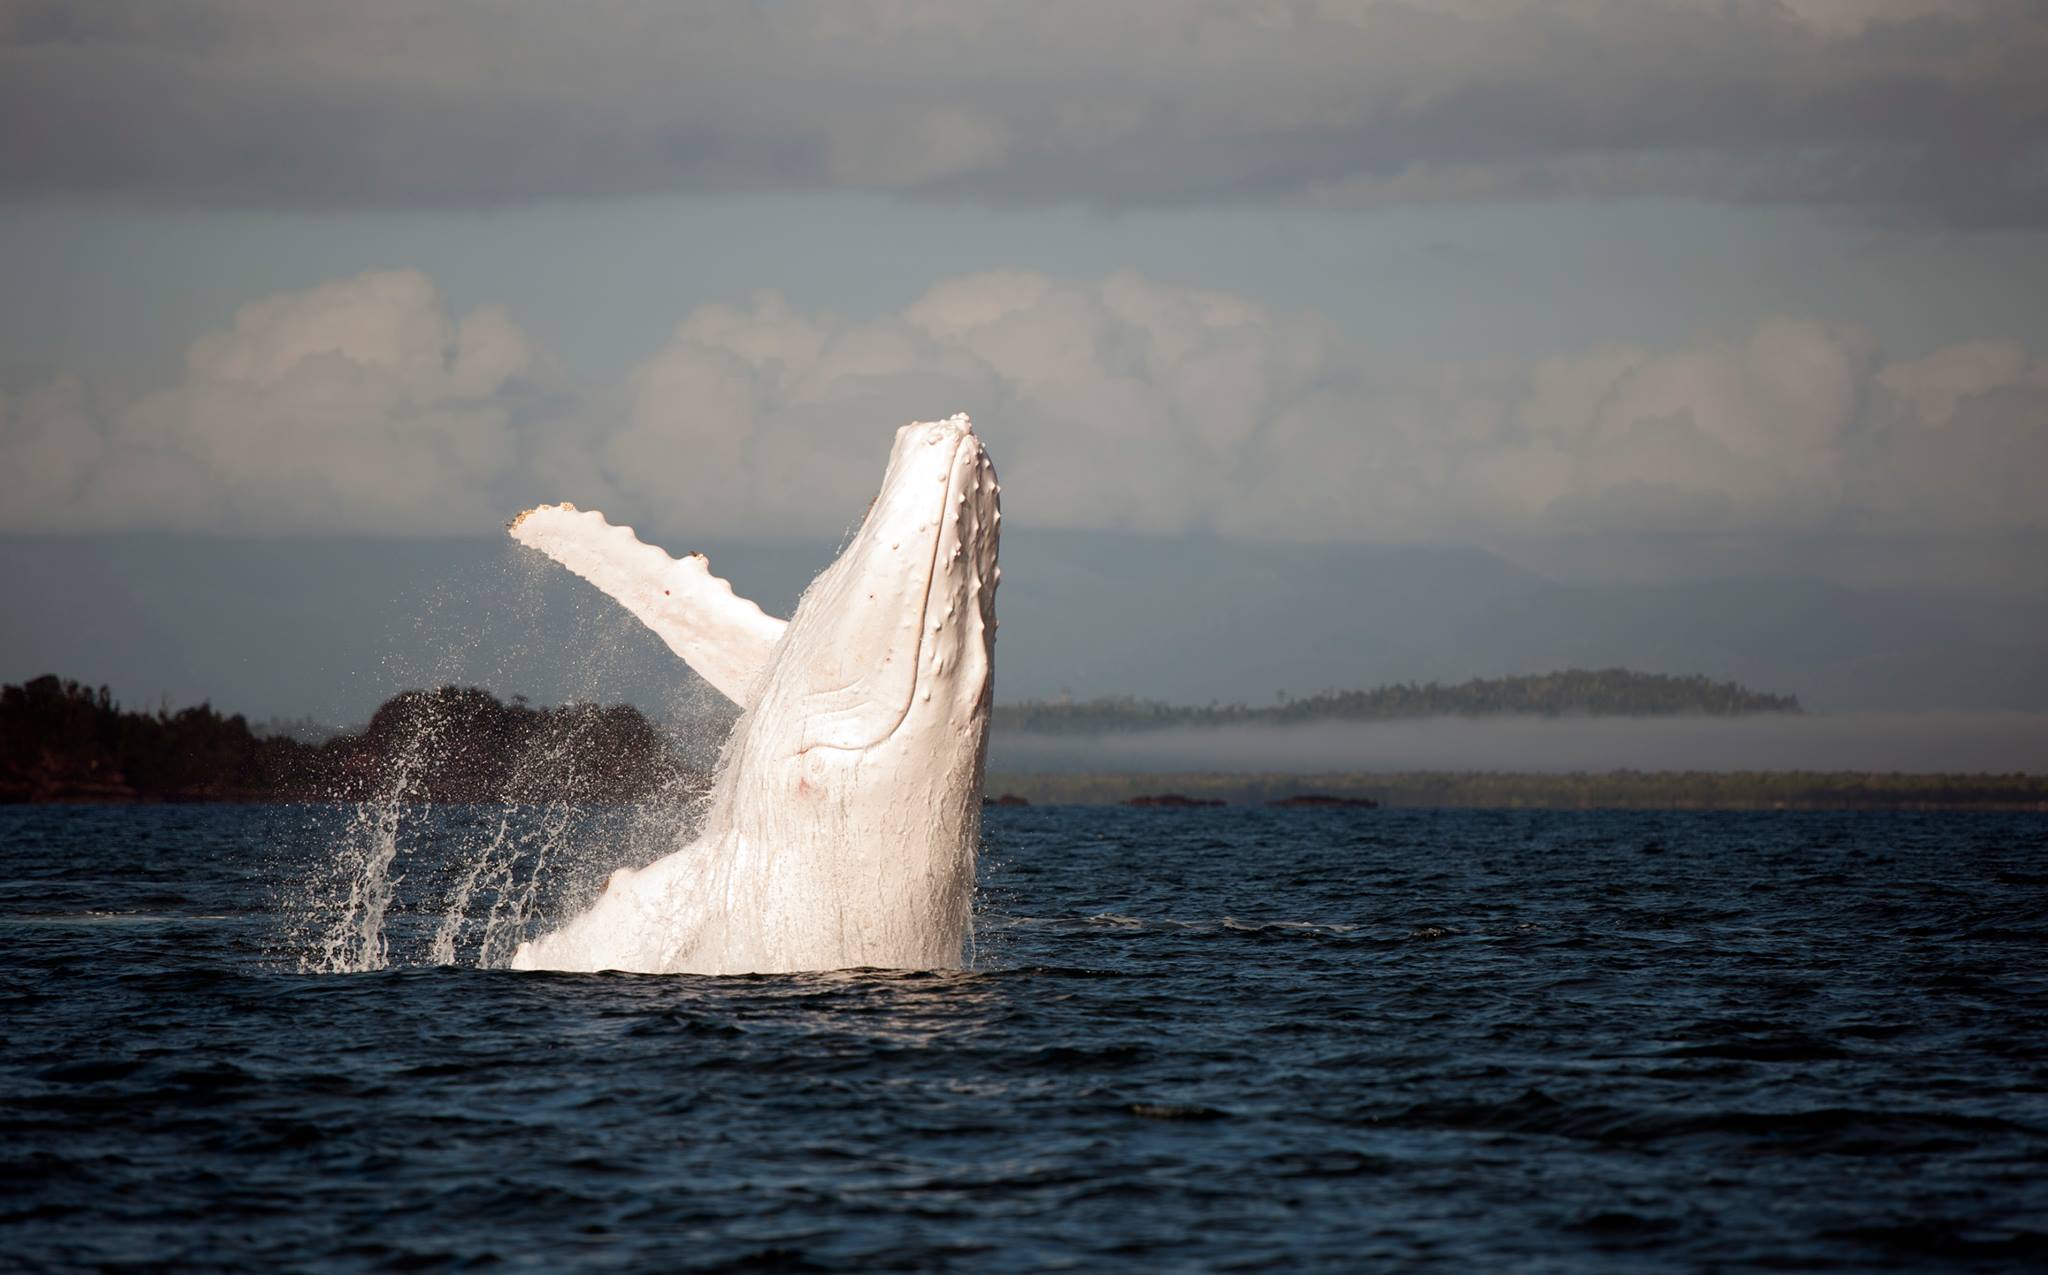 Outro aparecimento estelar de Migaloo, a baleia branca 01